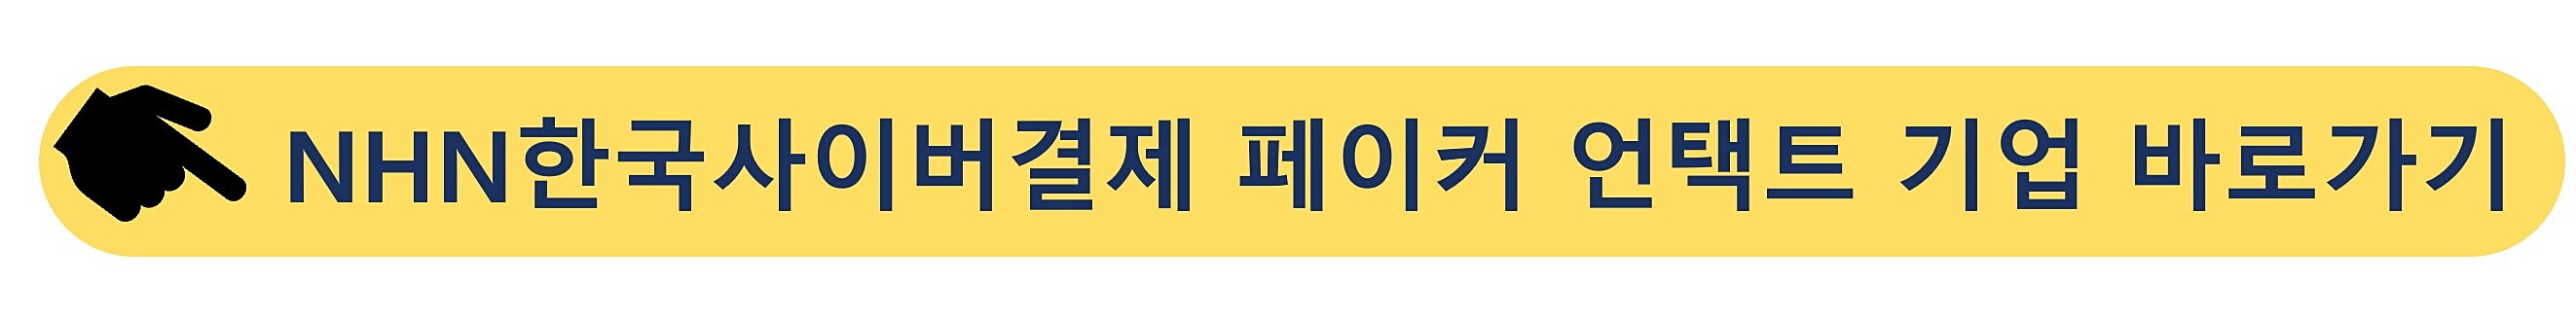 NHN한국사이버결제-페이코